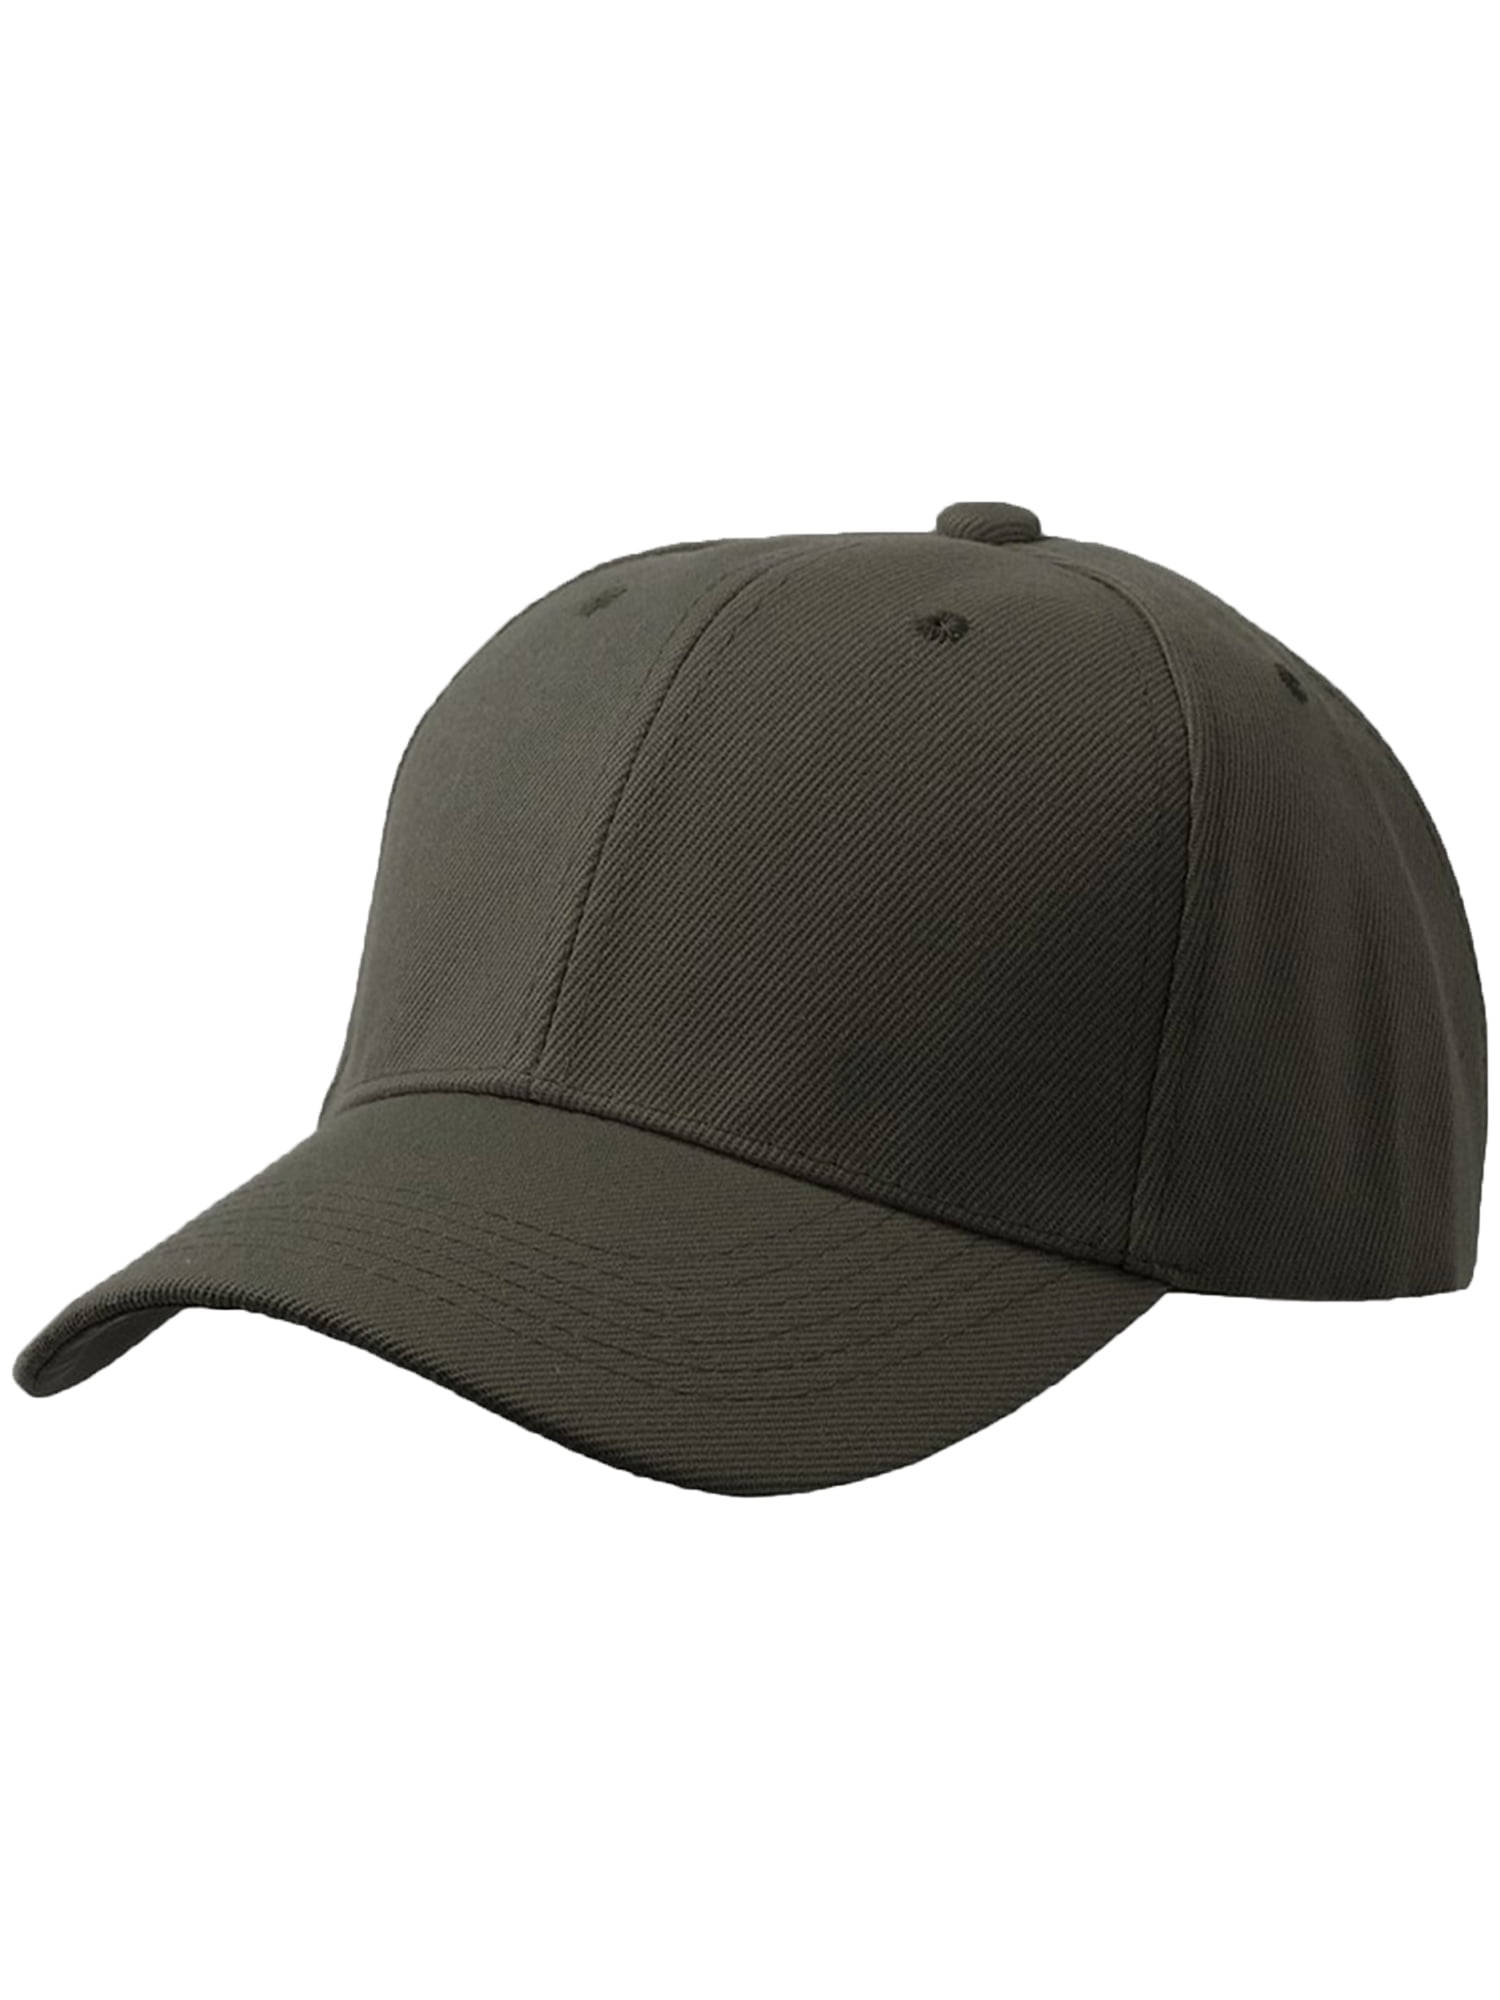 Men's Plain Baseball Cap Adjustable Curved Visor Hat-3P Black Charcoal  Olive